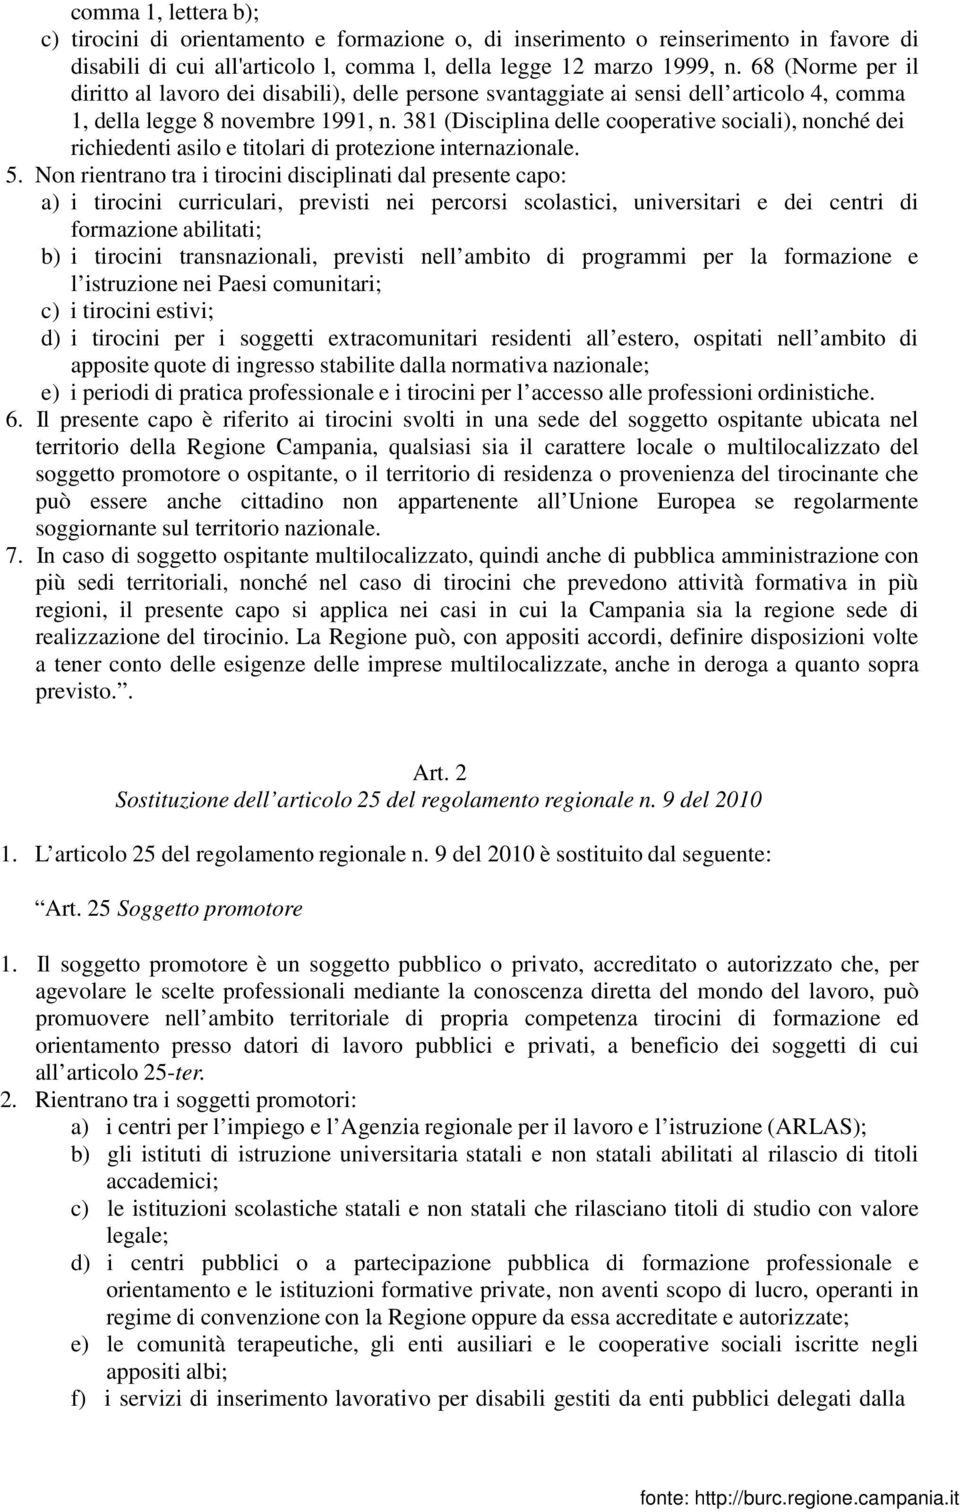 381 (Disciplina delle cooperative sociali), nonché dei richiedenti asilo e titolari di protezione internazionale. 5.